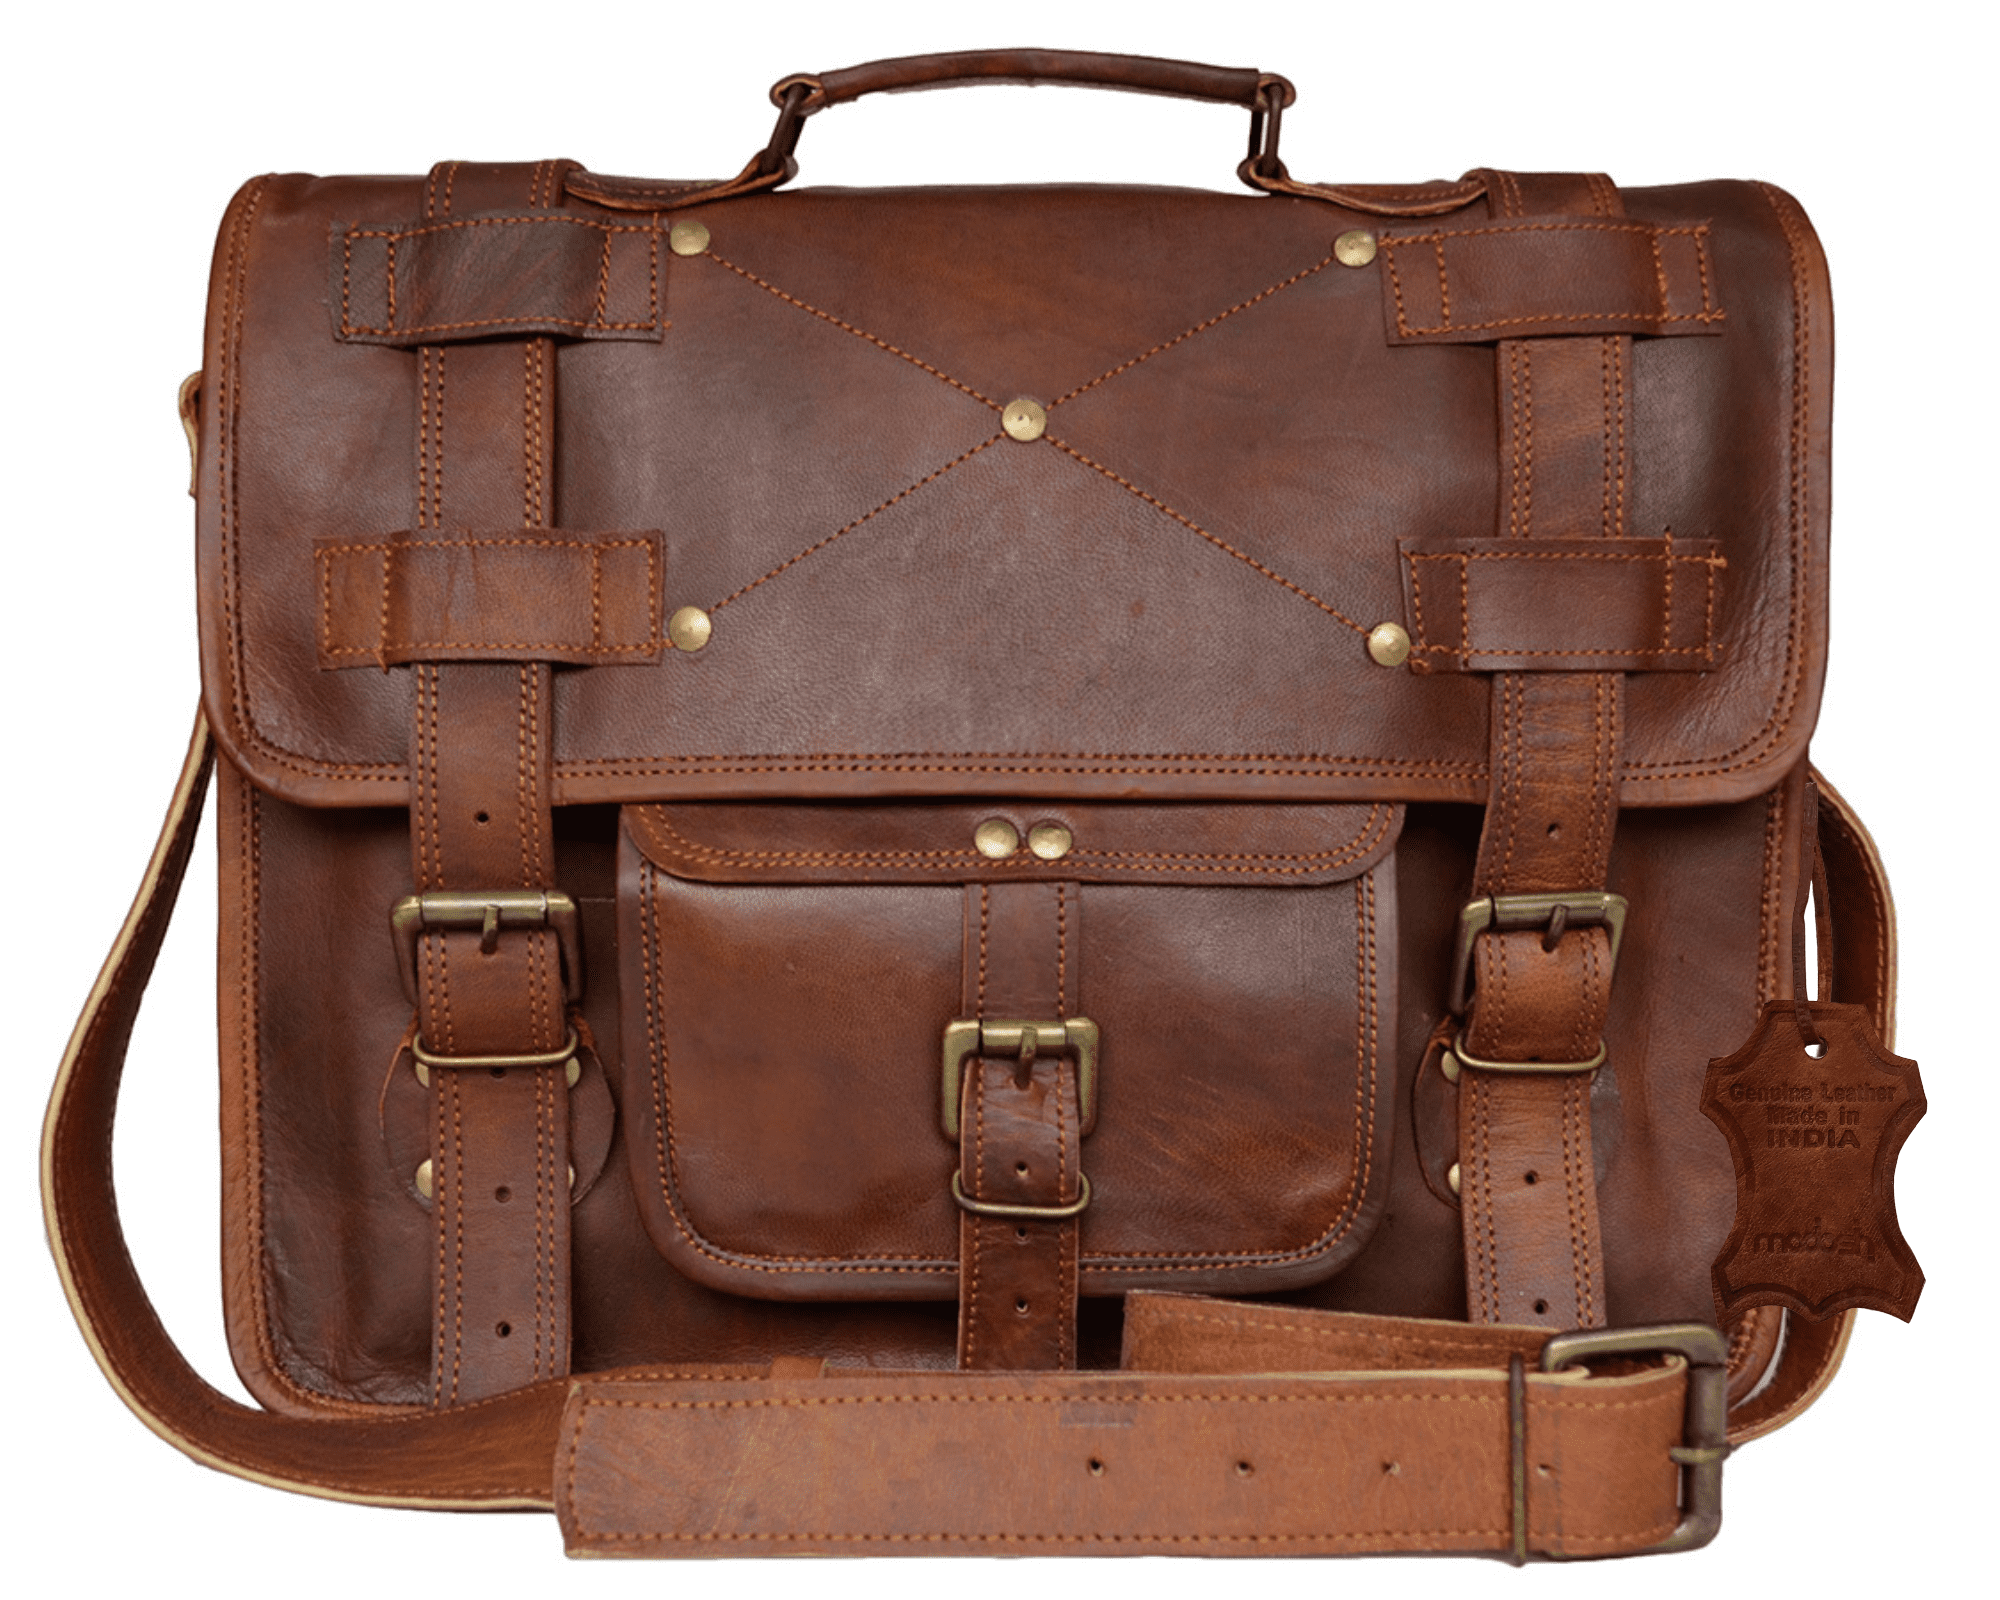 18 inch Laptop Bag - Document Holder Bag – Cross Body Shoulder Bag. PL1-30  | eBay